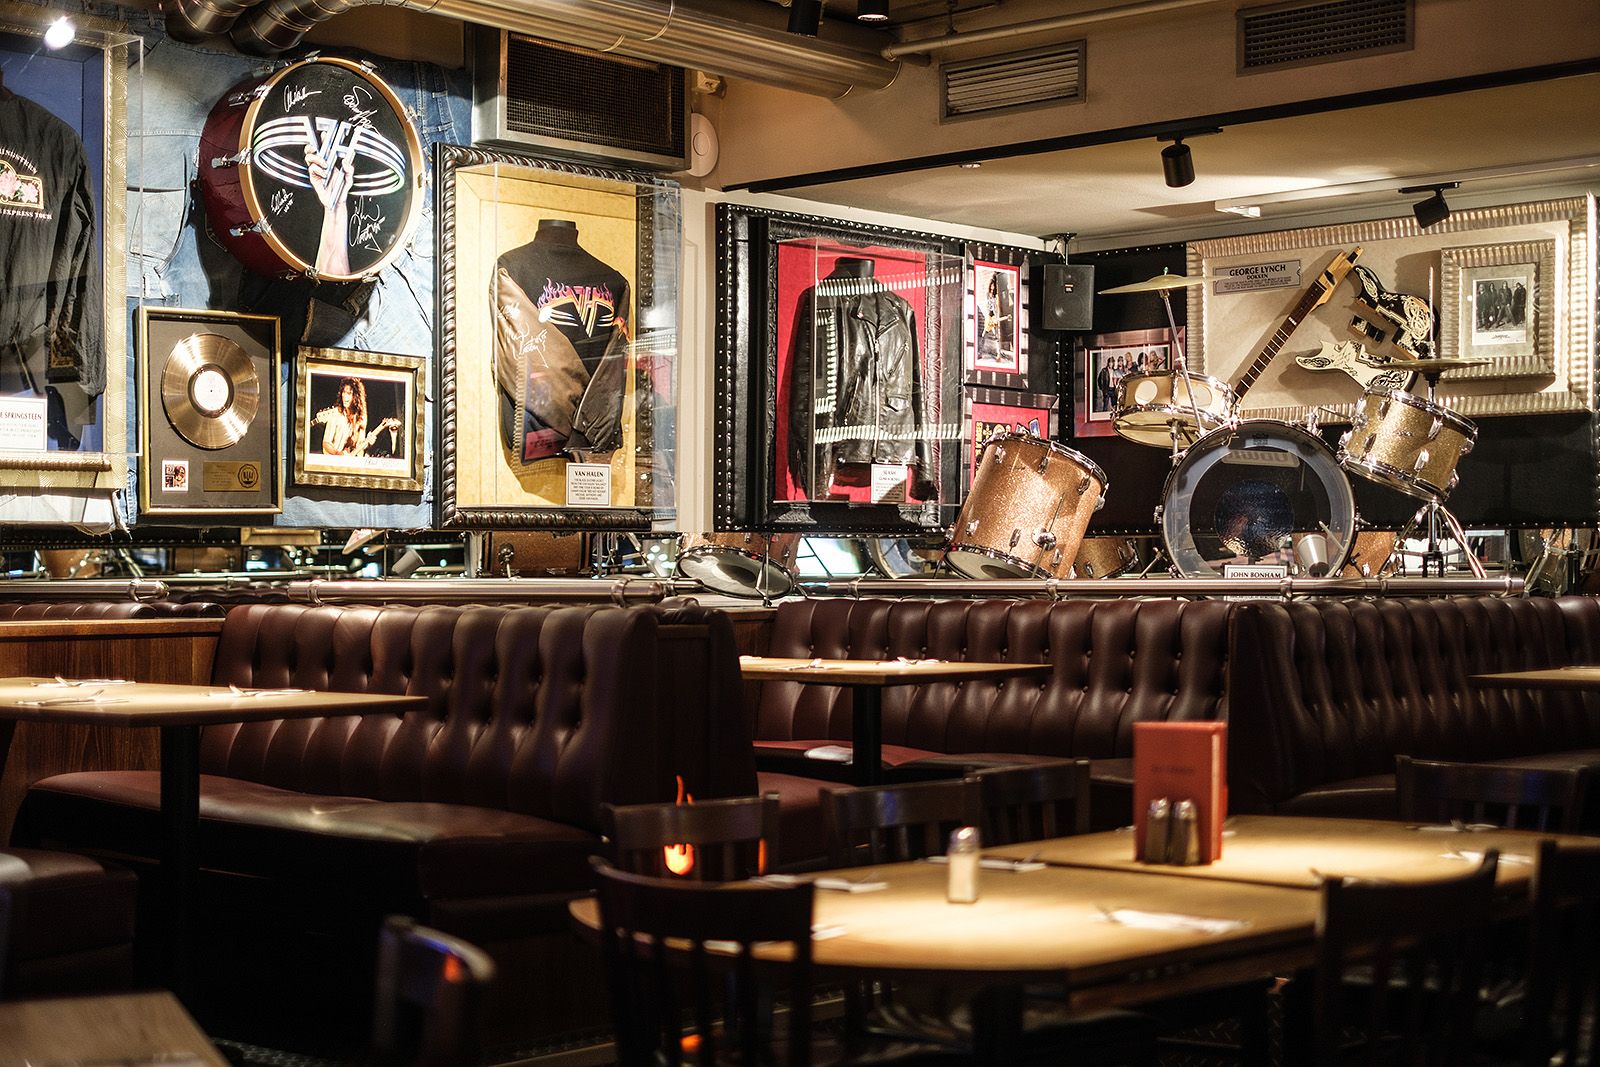 Hard Rock Cafe – Hottest restaurants